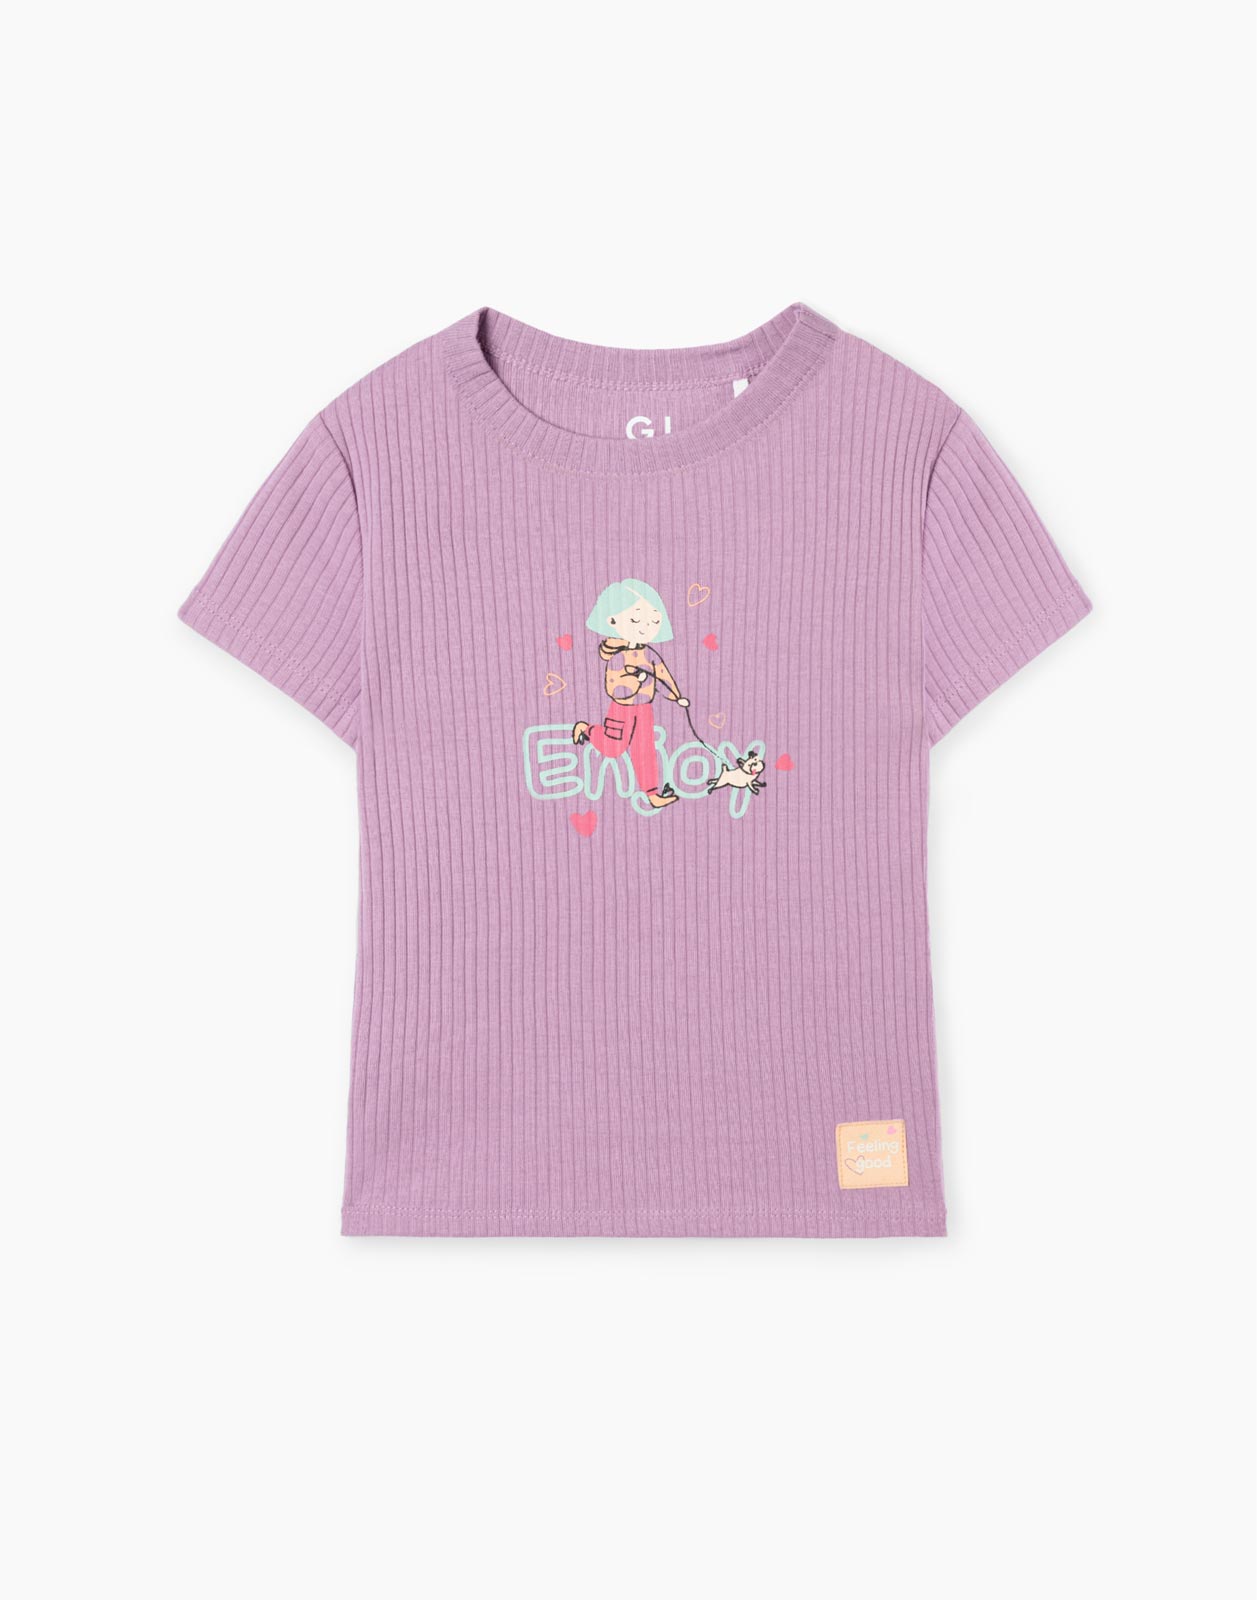 Фиолетовая приталенная футболка в рубчик с принтом для девочки GKT021478 8-9л/134